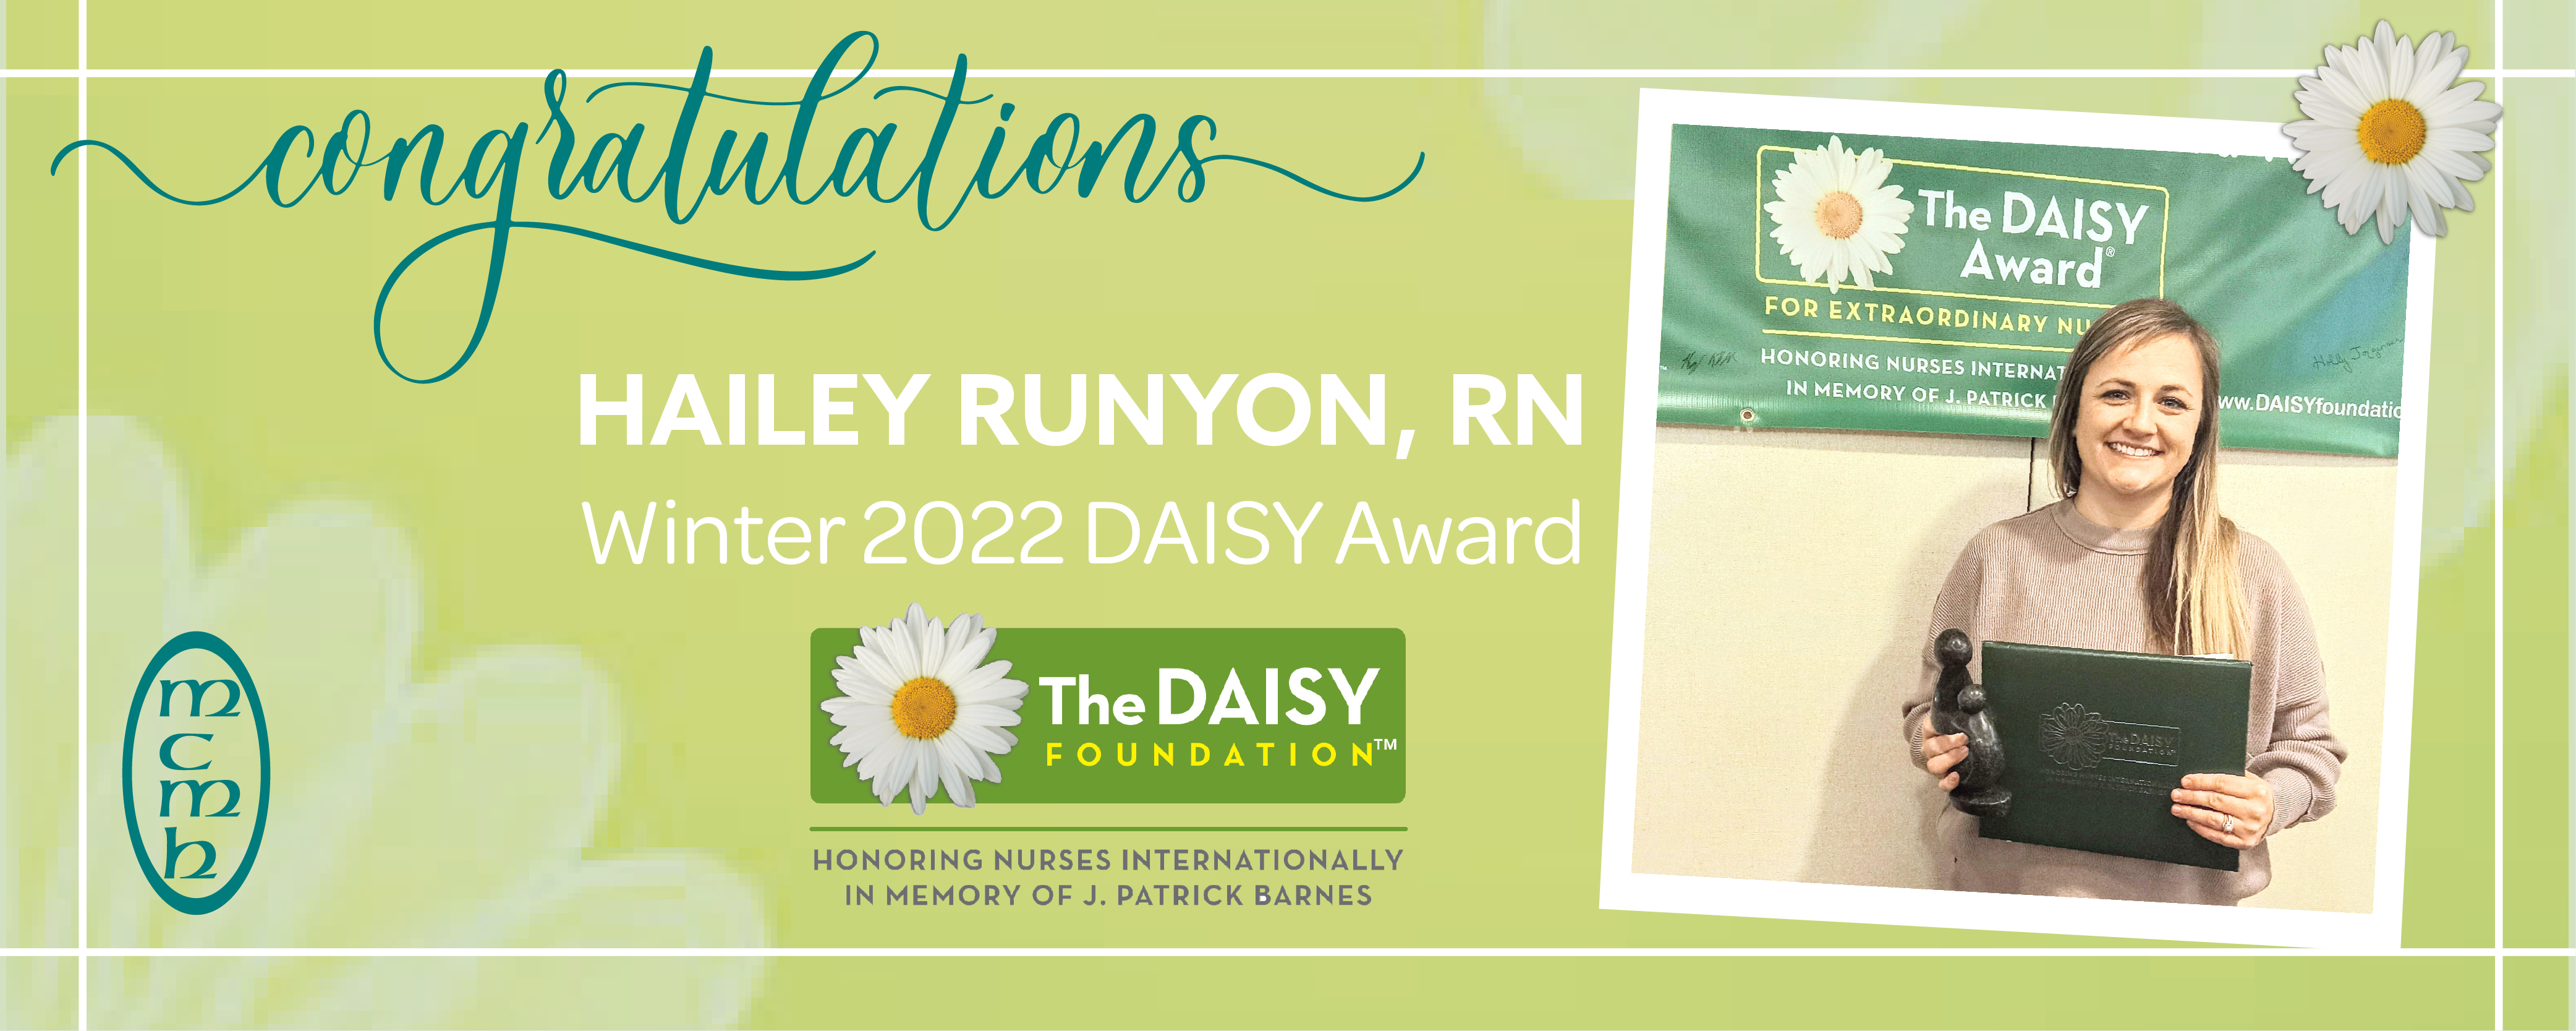 Congratulations 
HAILEY RUNYON, RN 
Winter 2022 DAISY Award

The DAISY FOUNDATION 

HONORING NURSES INTERNATIONALLY IN MEMORY OF J. PATRICK BARNES